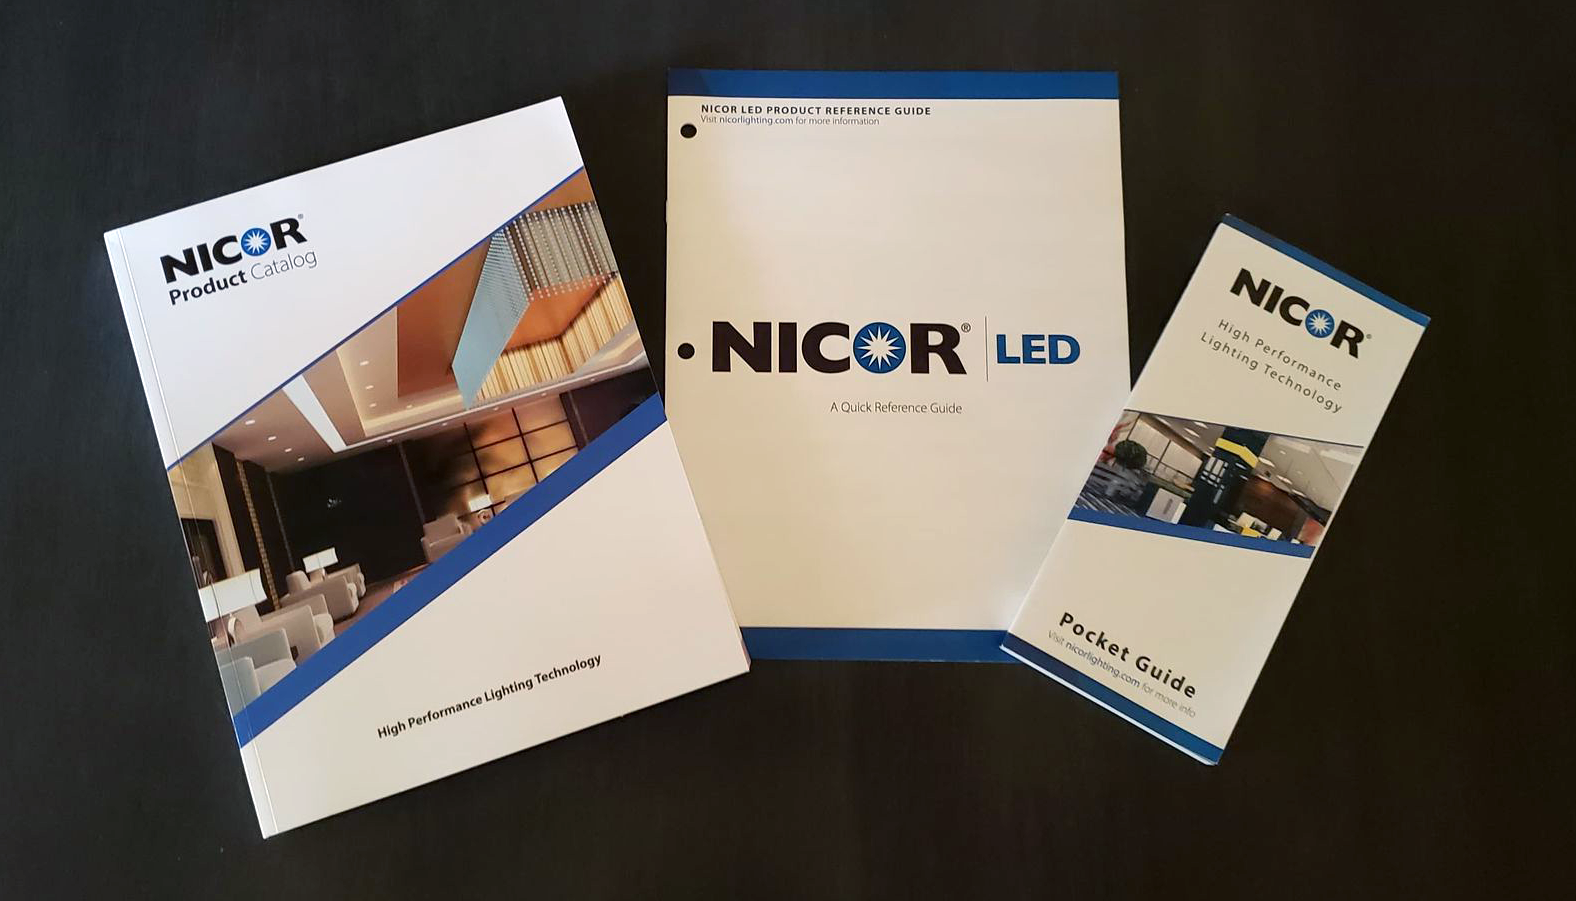 Nicor catalogs